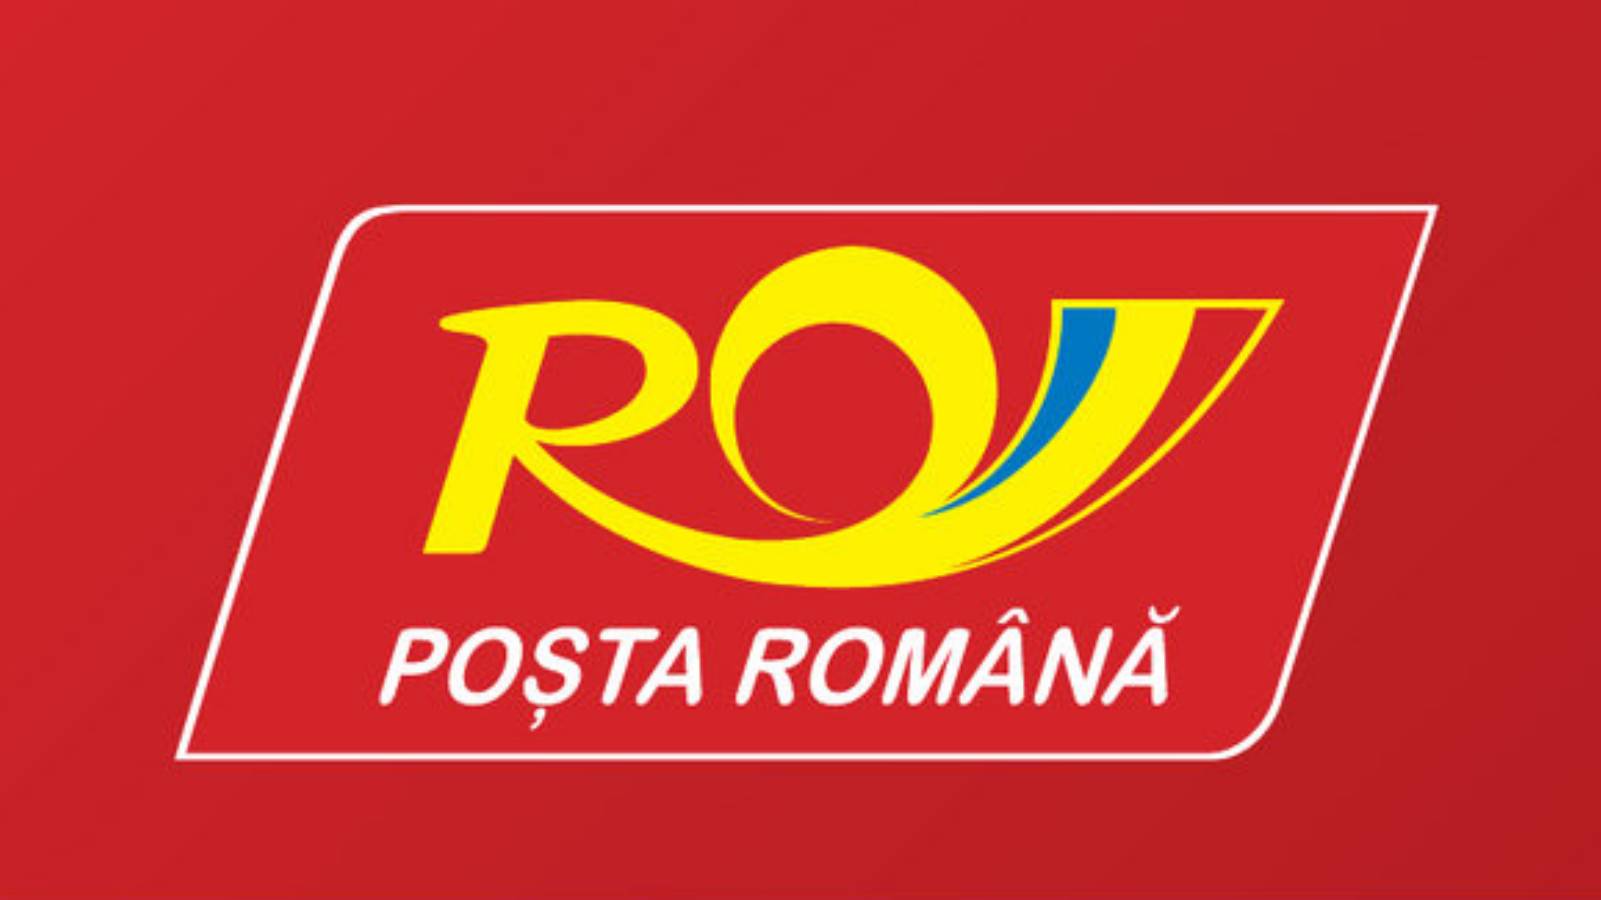 Romanialaisen Post Rovinian viesti